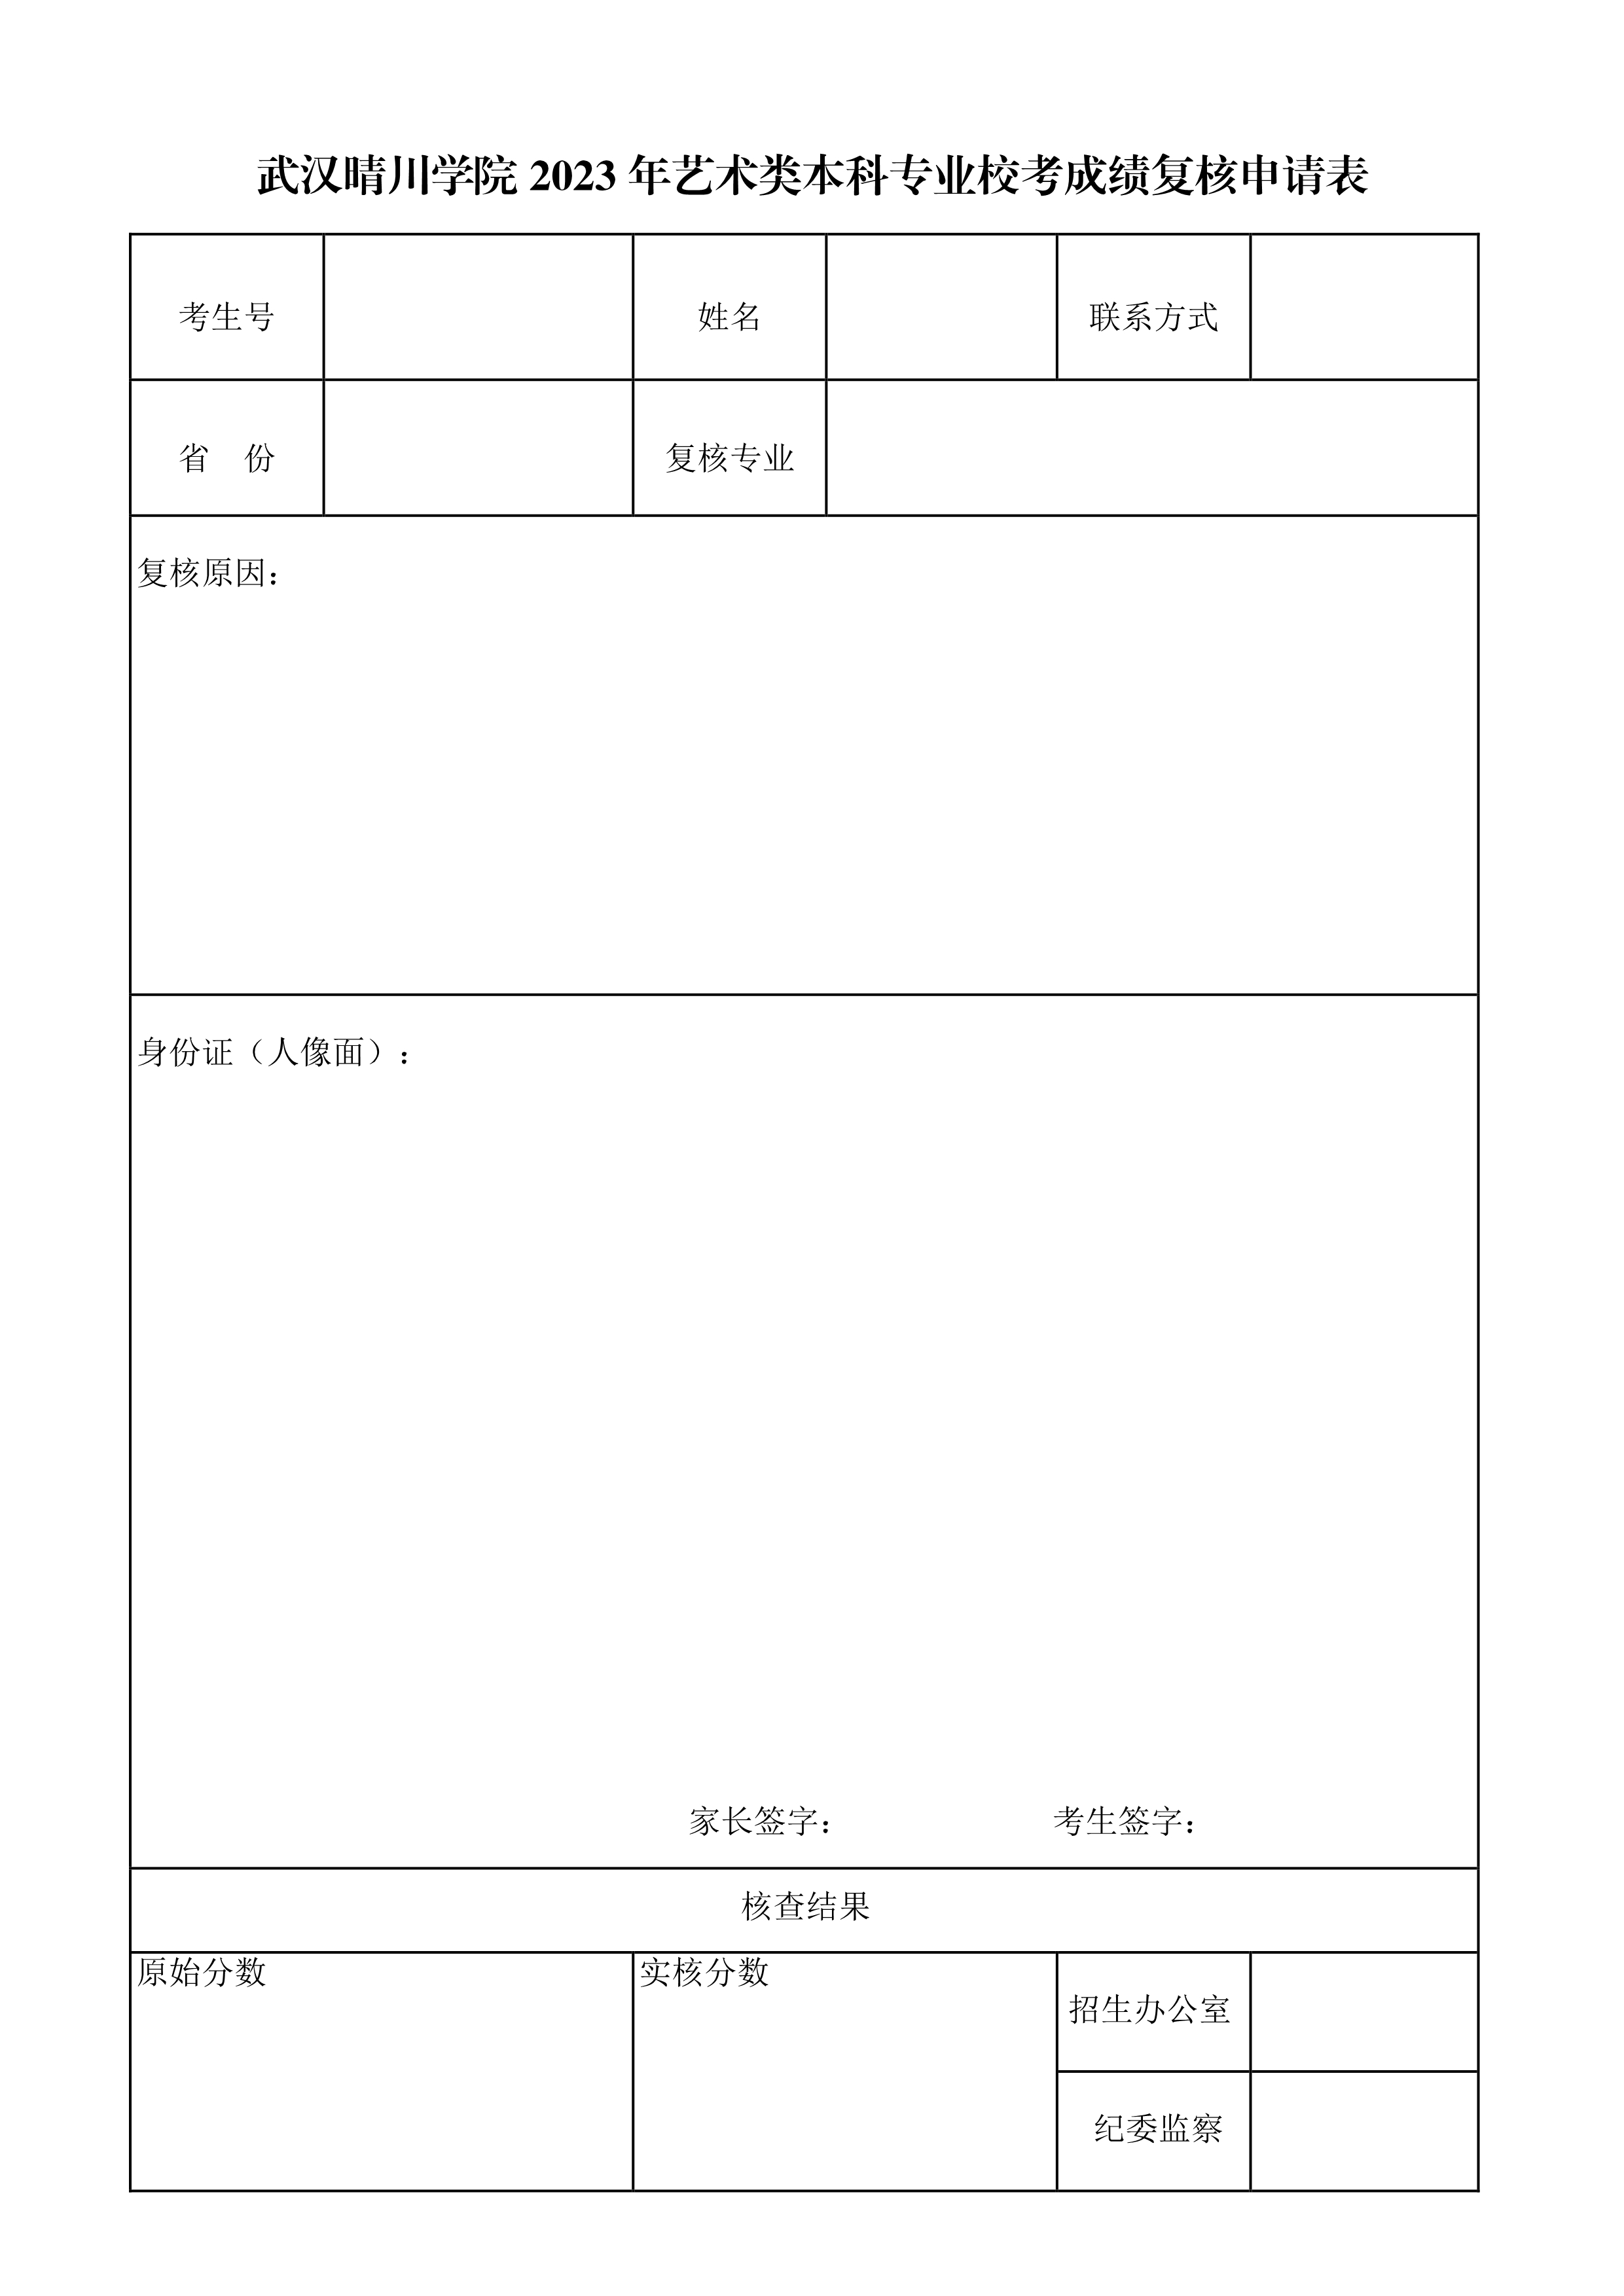 武汉晴川学院2023年艺术类专业校考成绩复核申请表_1.jpg